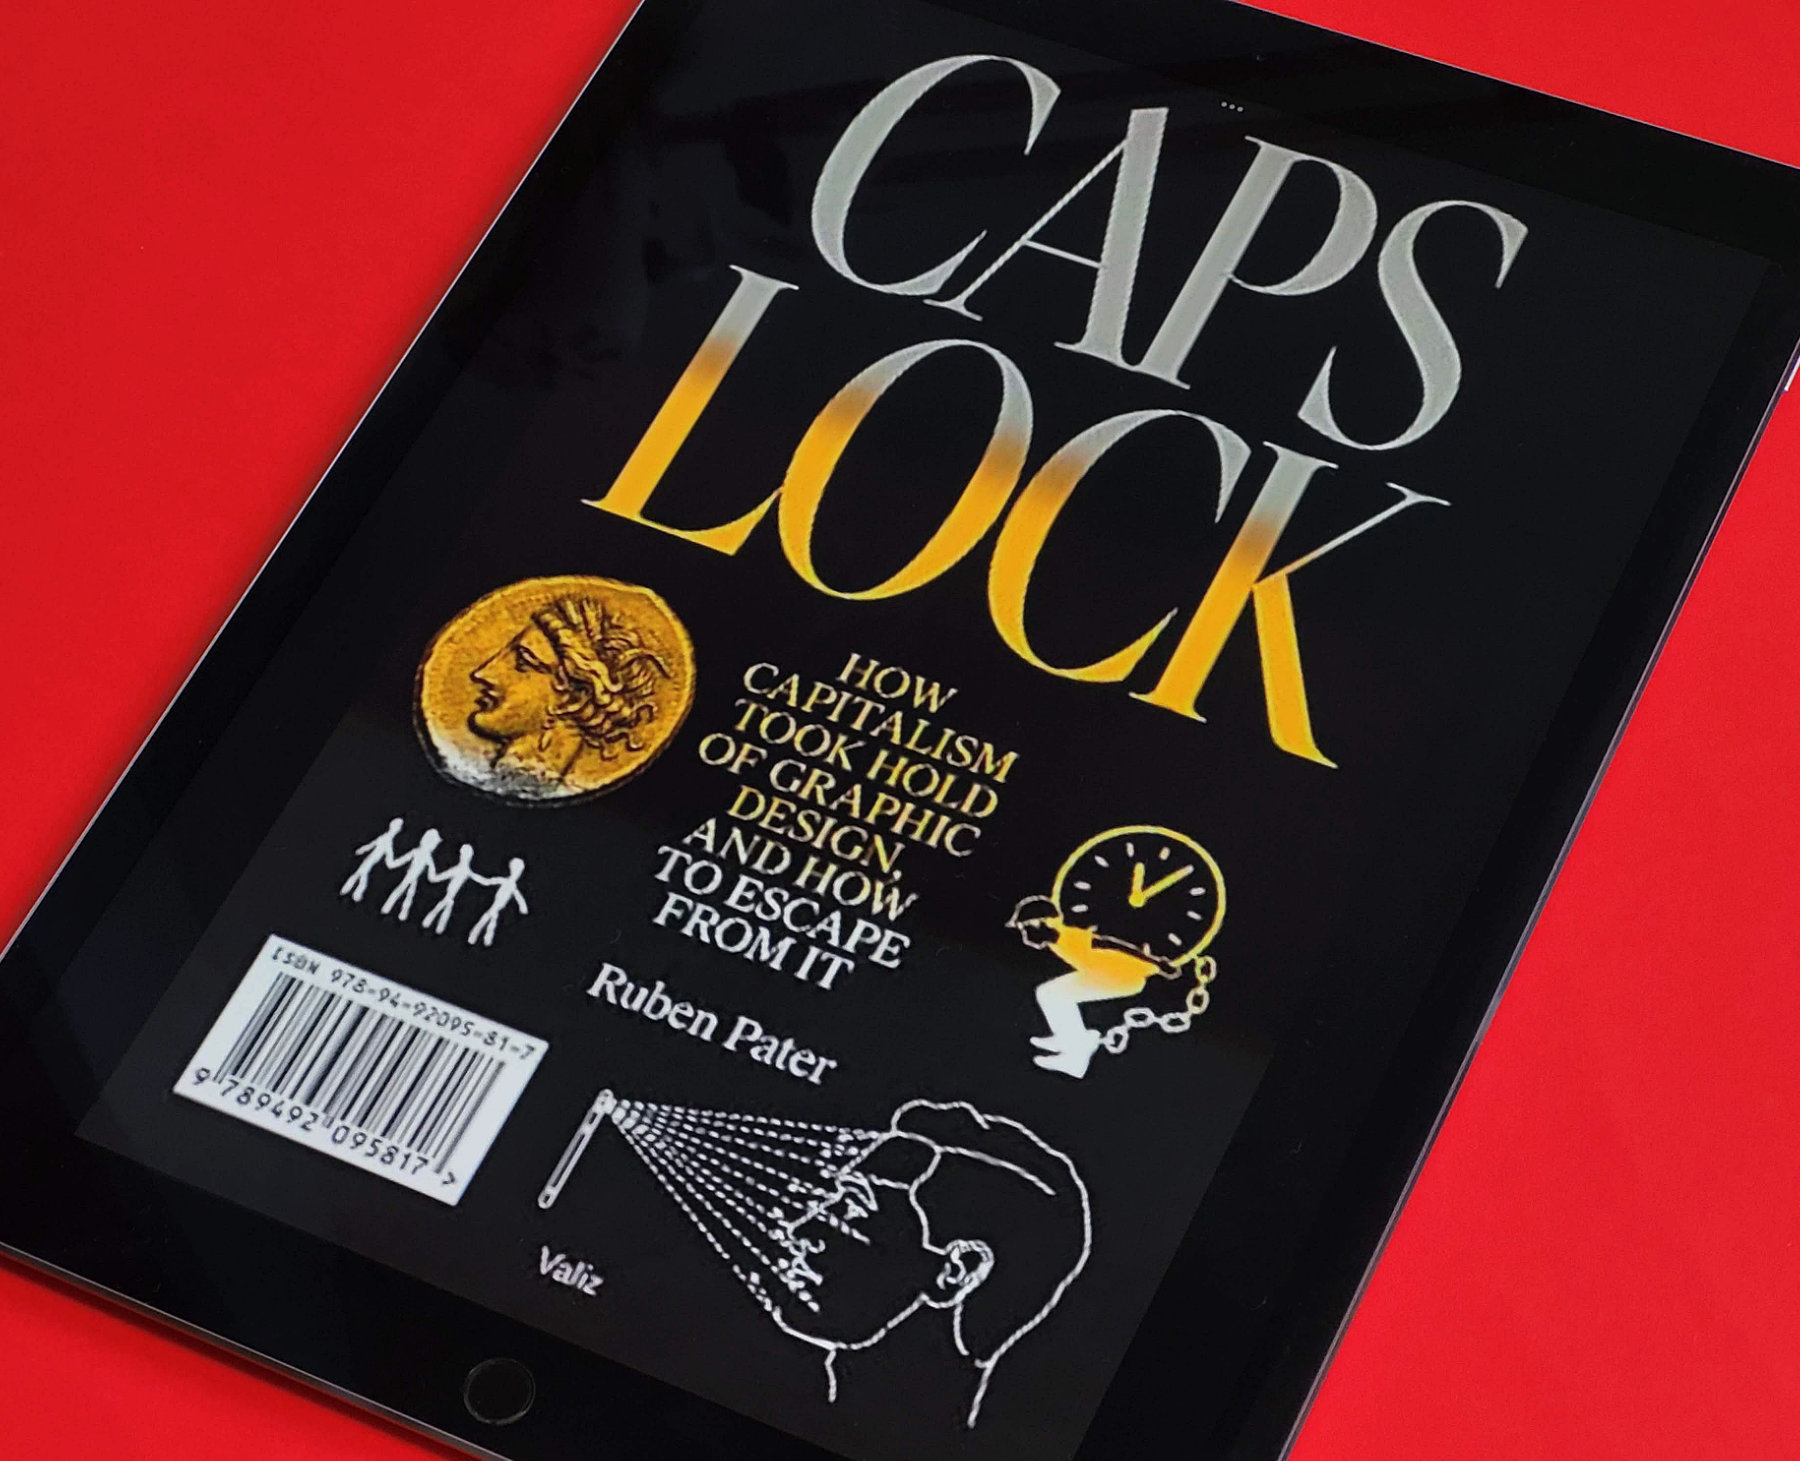 Foto do livro “Caps Lock” na tela de um tablet